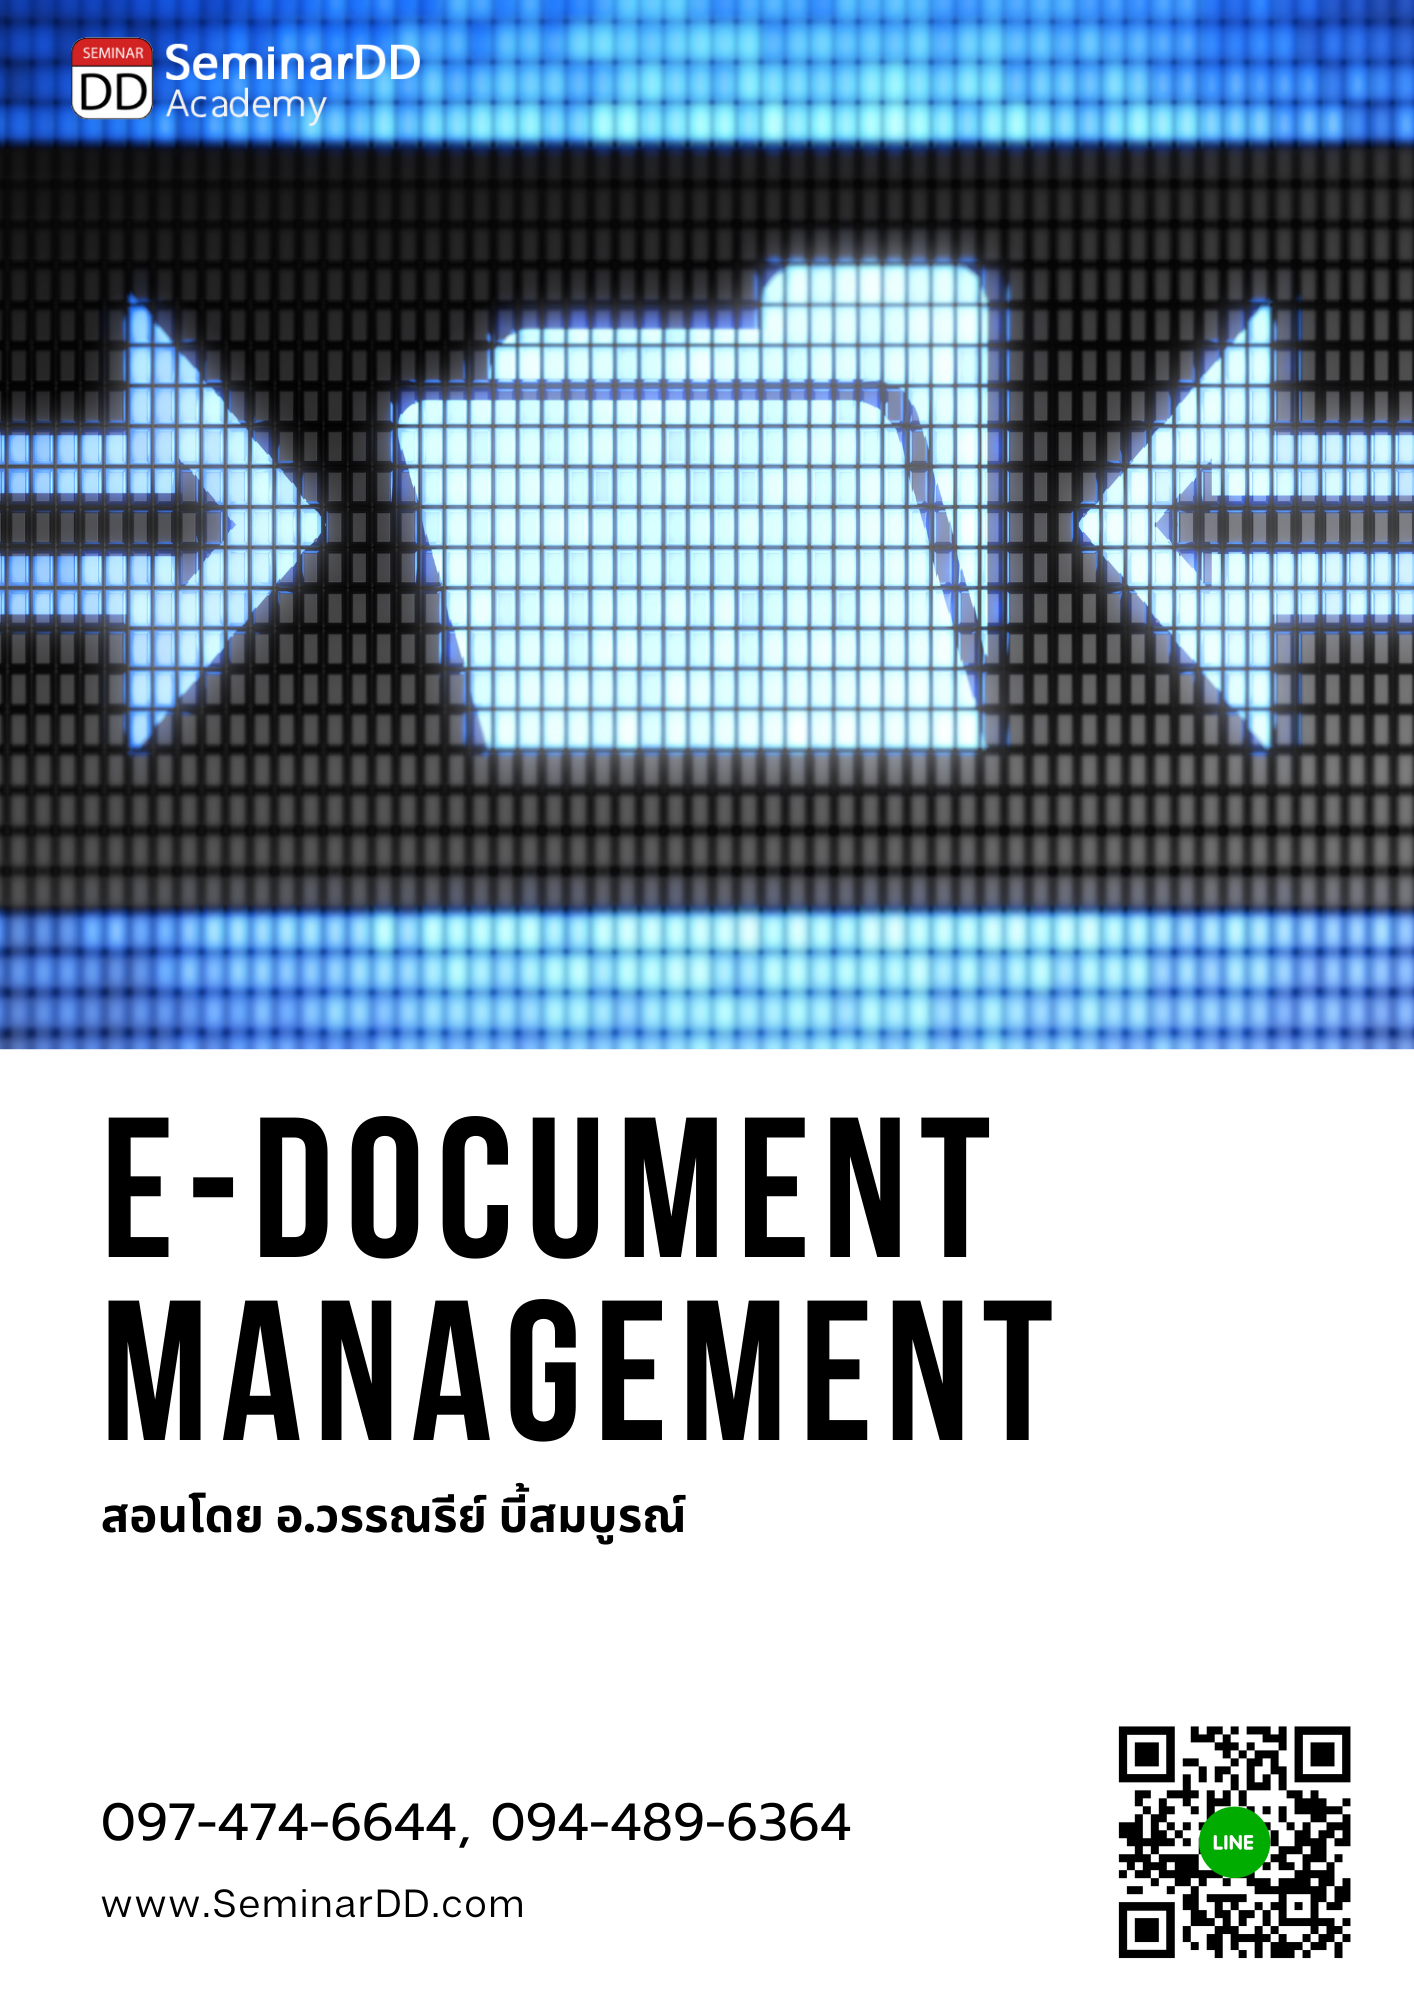 หลักสูตรอบรม หลักสูตร การบริหารและจัดเก็บเอกสาร ในรูปแบบดิจิทัล ตามมาตรฐานสากล (E-Document Management) ** หลักสูตร เต็มวัน ** อบรมในรูปแบบ Classroom